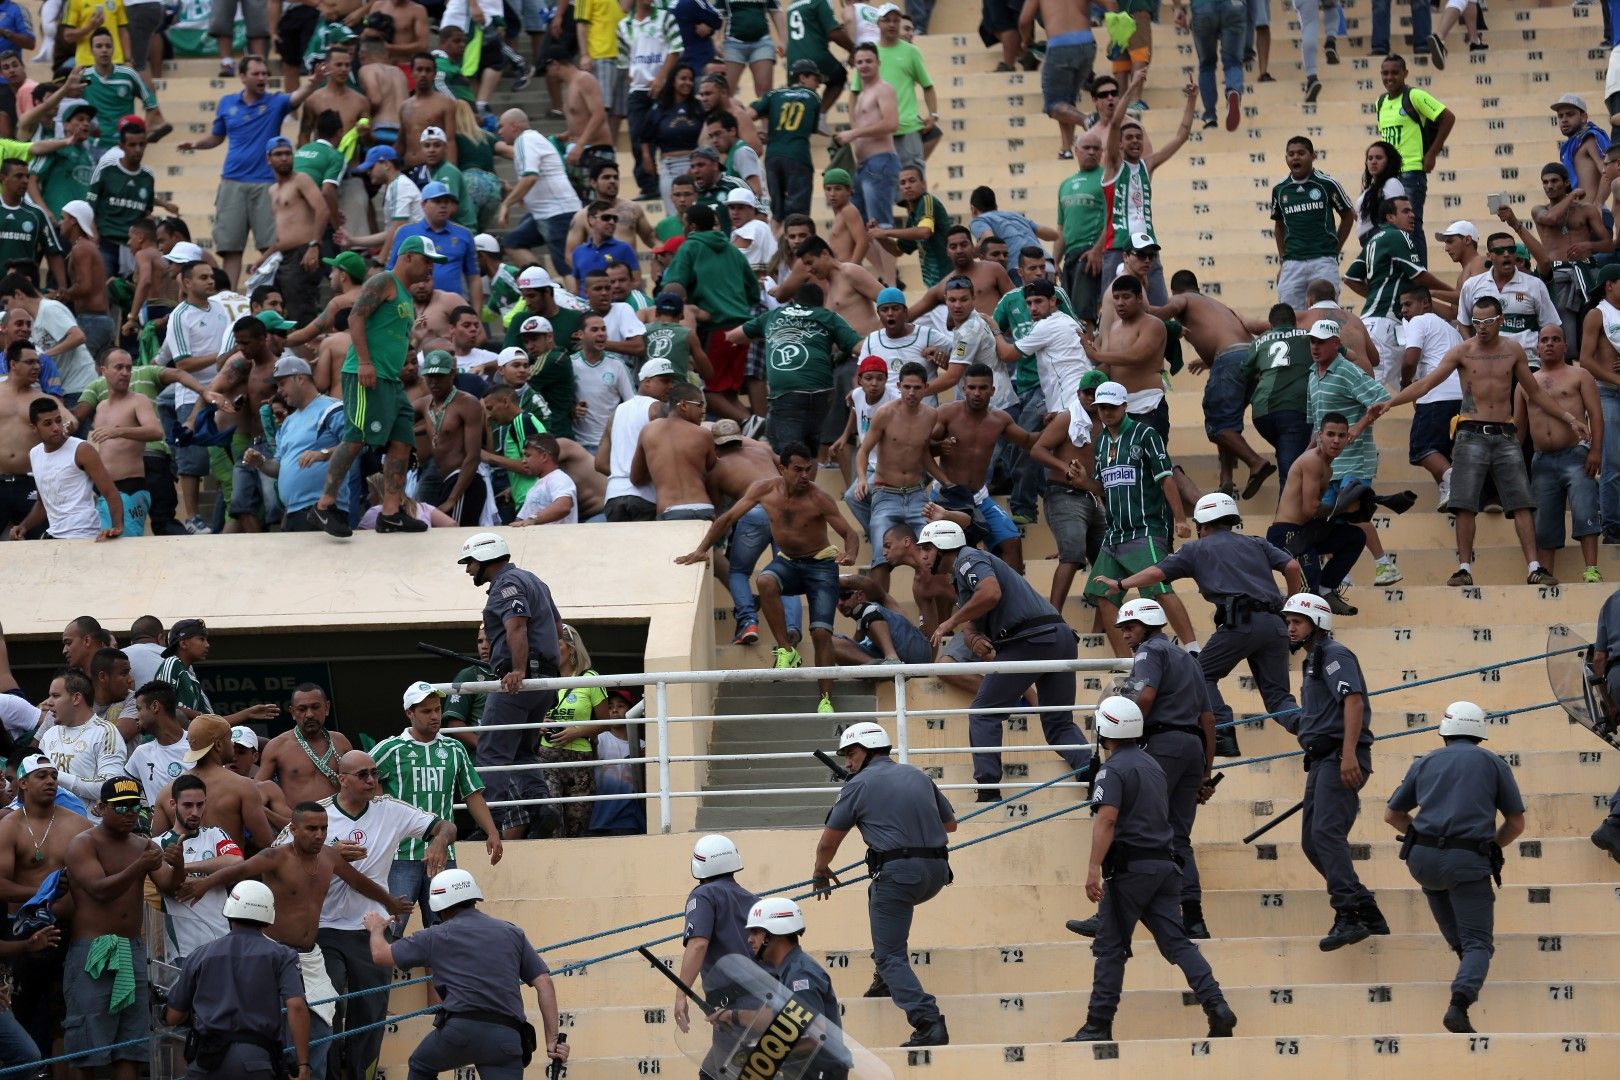 Коринтианс - Палмейрас. Ако Фла-Флу е дербито на класическите отбори от Рио и често е футболно пиршество, сблъсъкът на Сао Пауло е ураган от нерви, побоища и омраза.